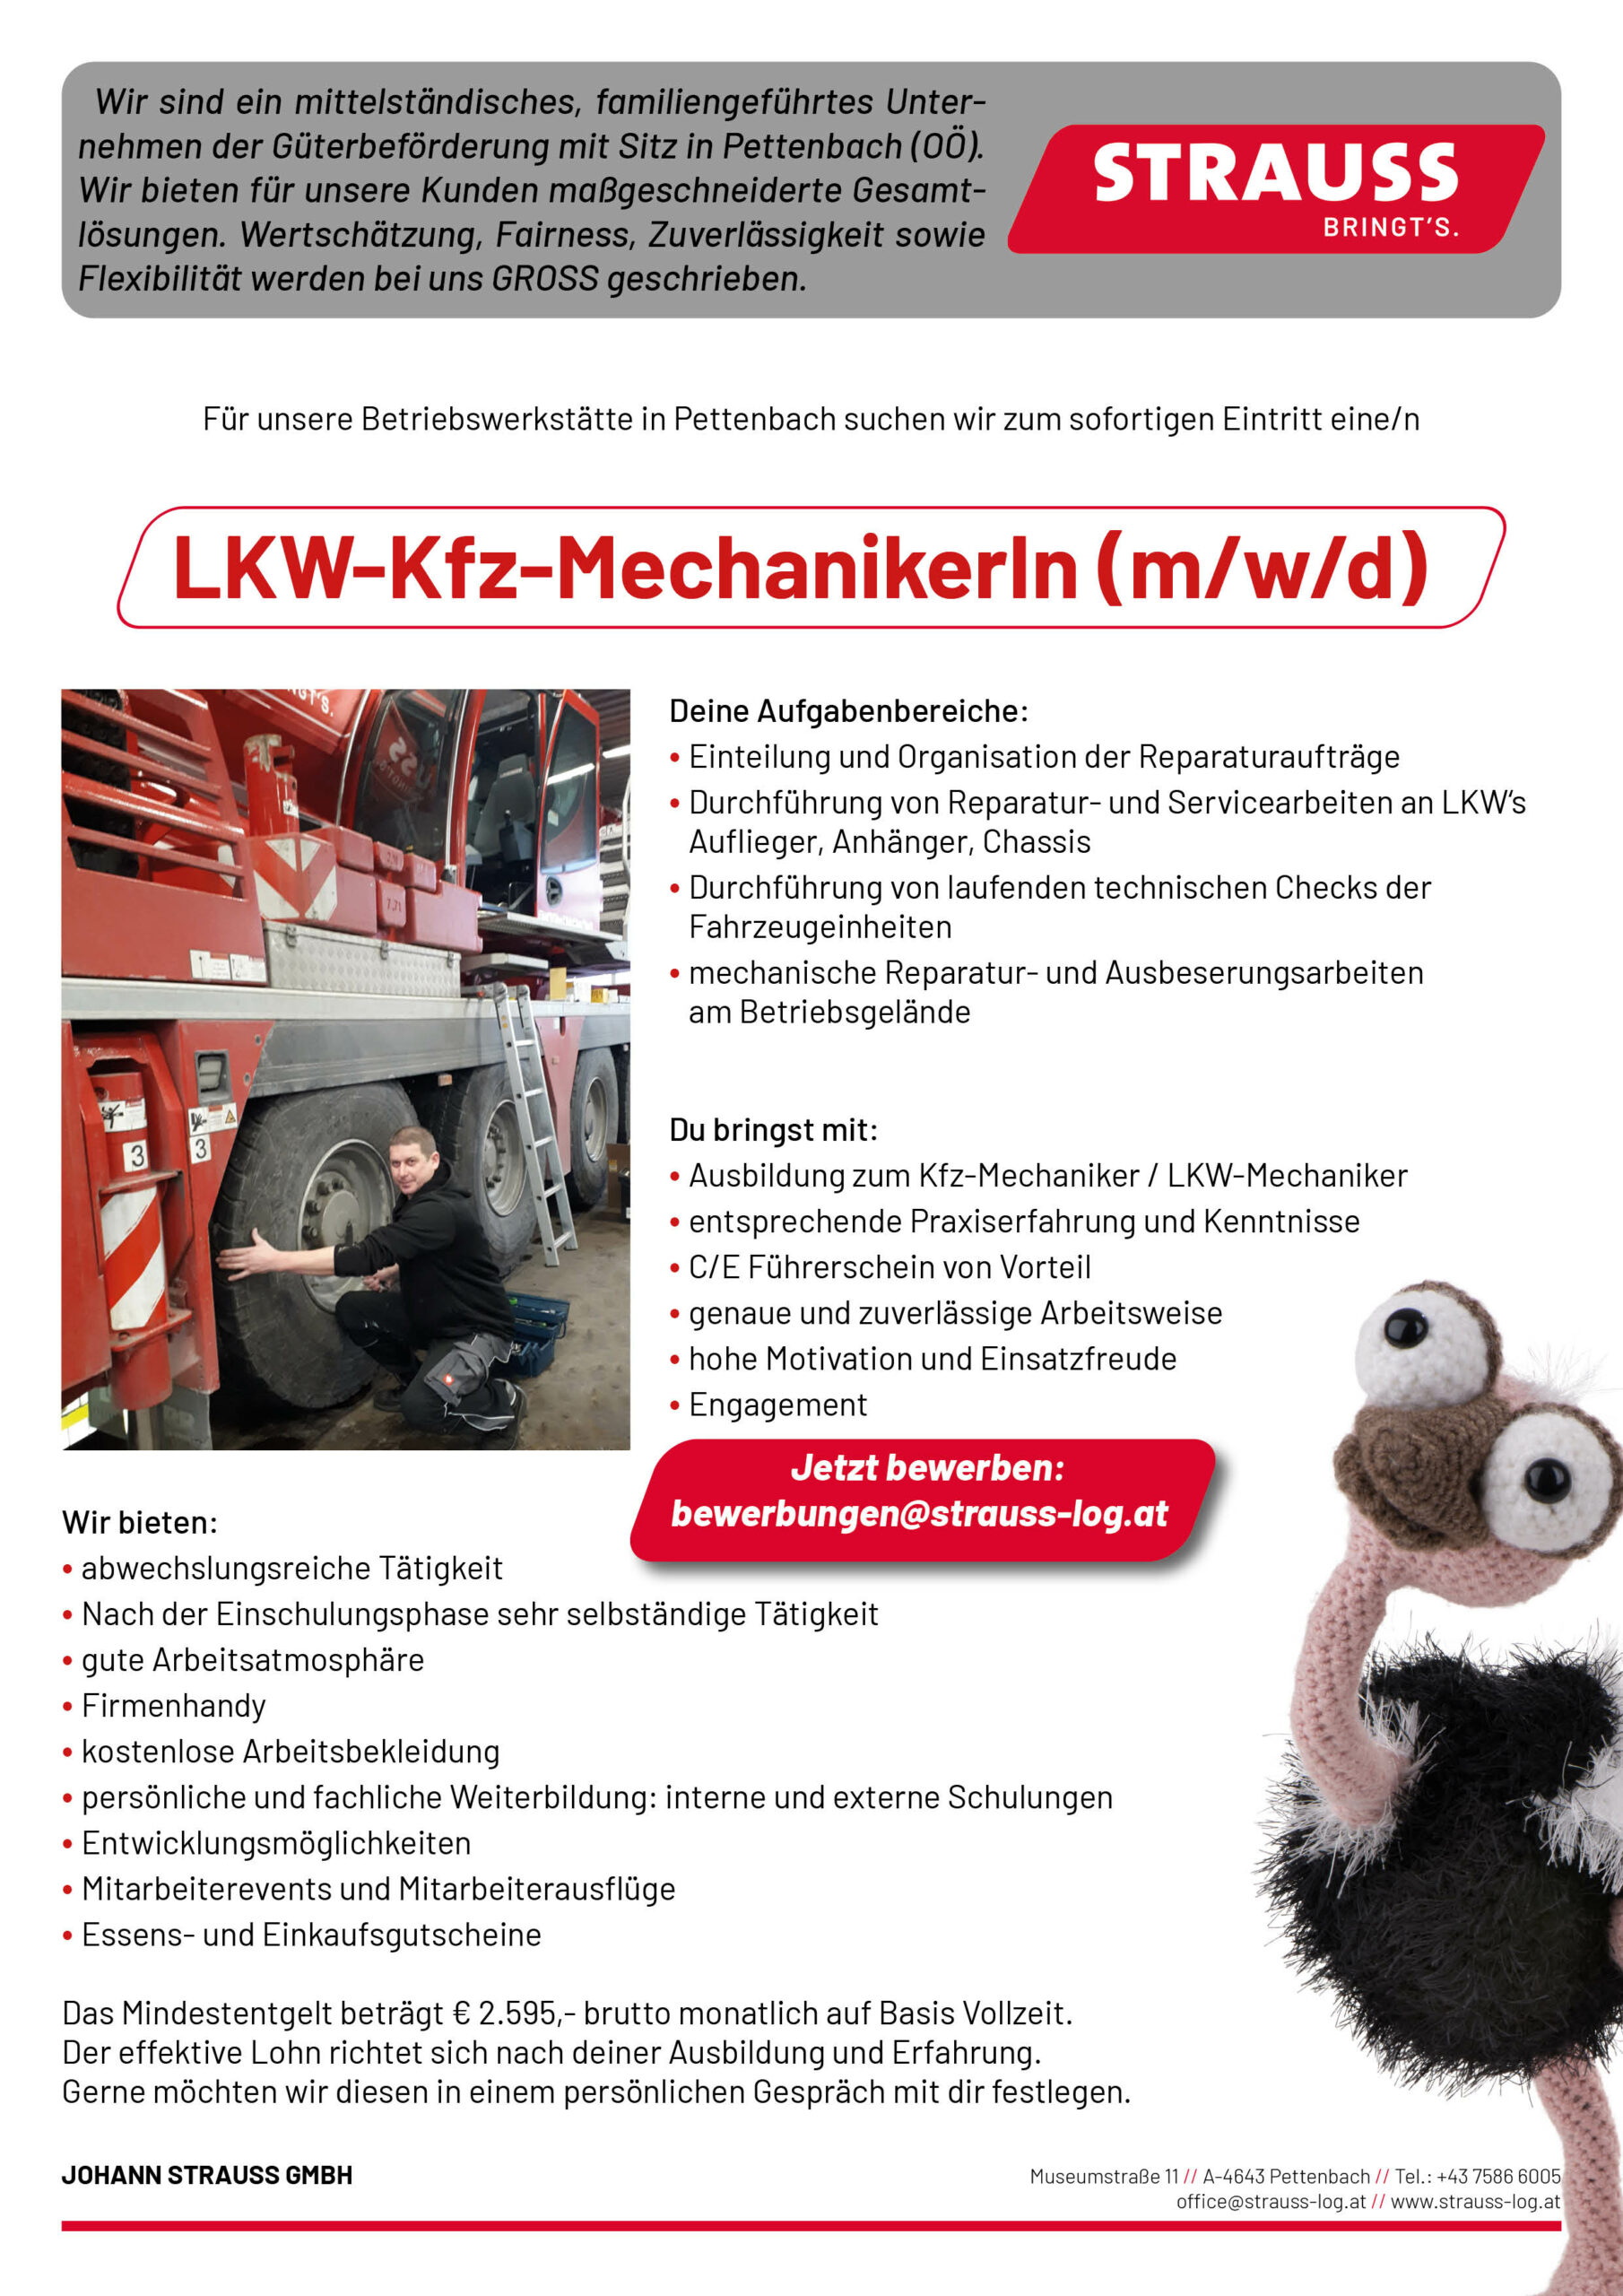 LKW-KFZ-Mechaniker